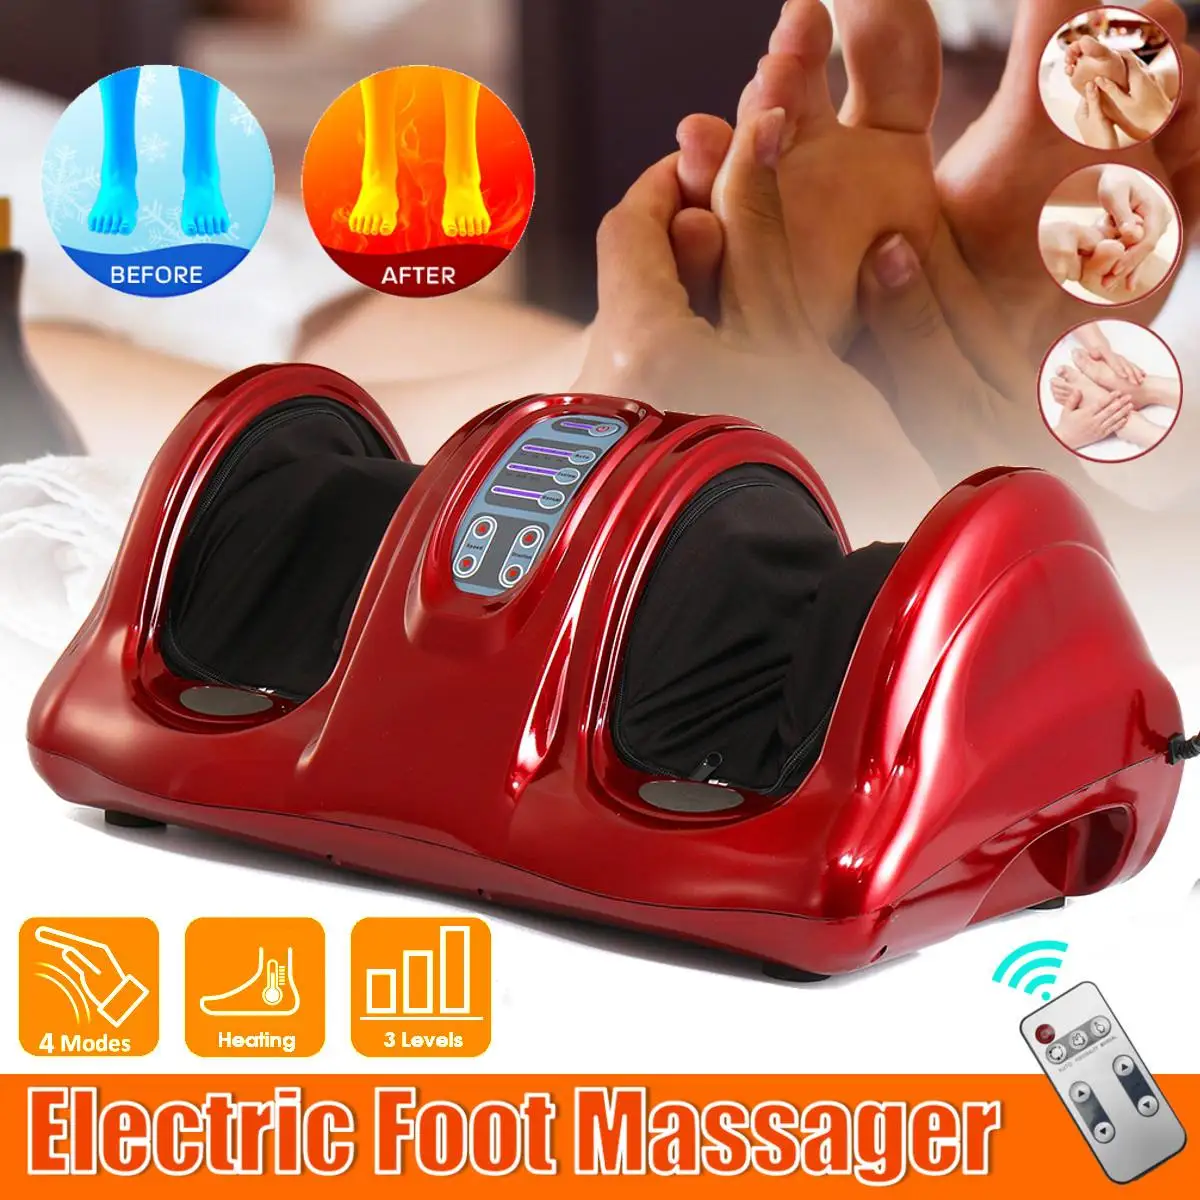 220V Foot Massager Electric Heating Foot Body Leg Massager Shiatsu Kneading Roller Vibrator Machine Reflexology Calf Leg Relax